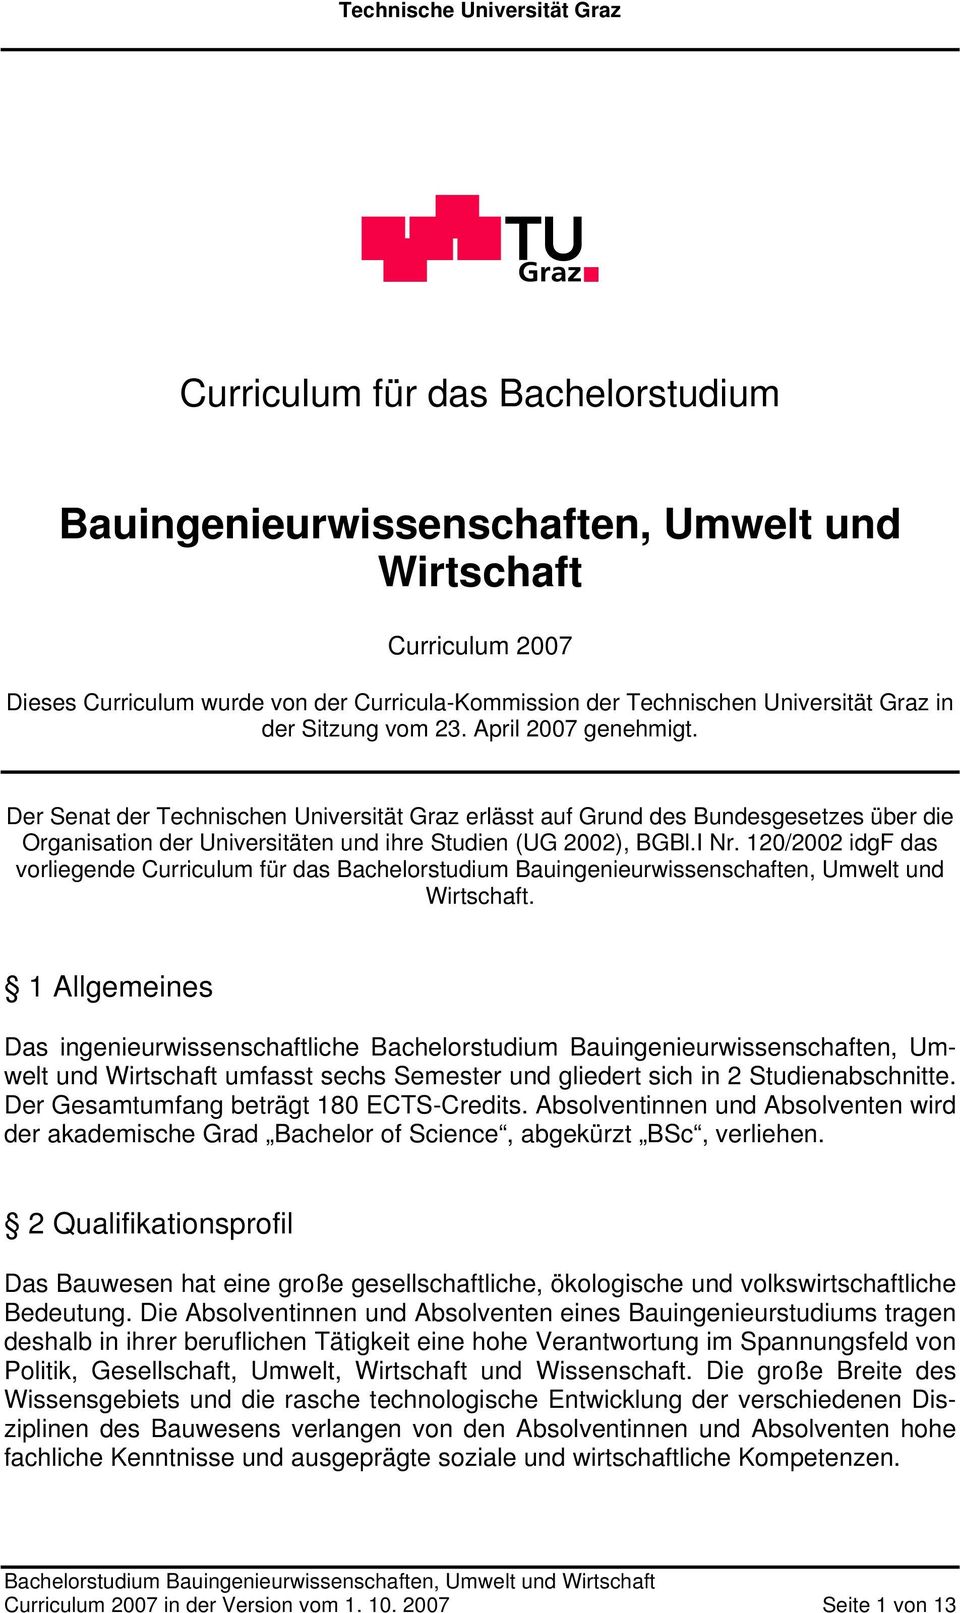 120/2002 idgf das vorliegende Curriculum für das Bachelorstudium Bauingenieurwissenschaften, Umwelt und Wirtschaft.